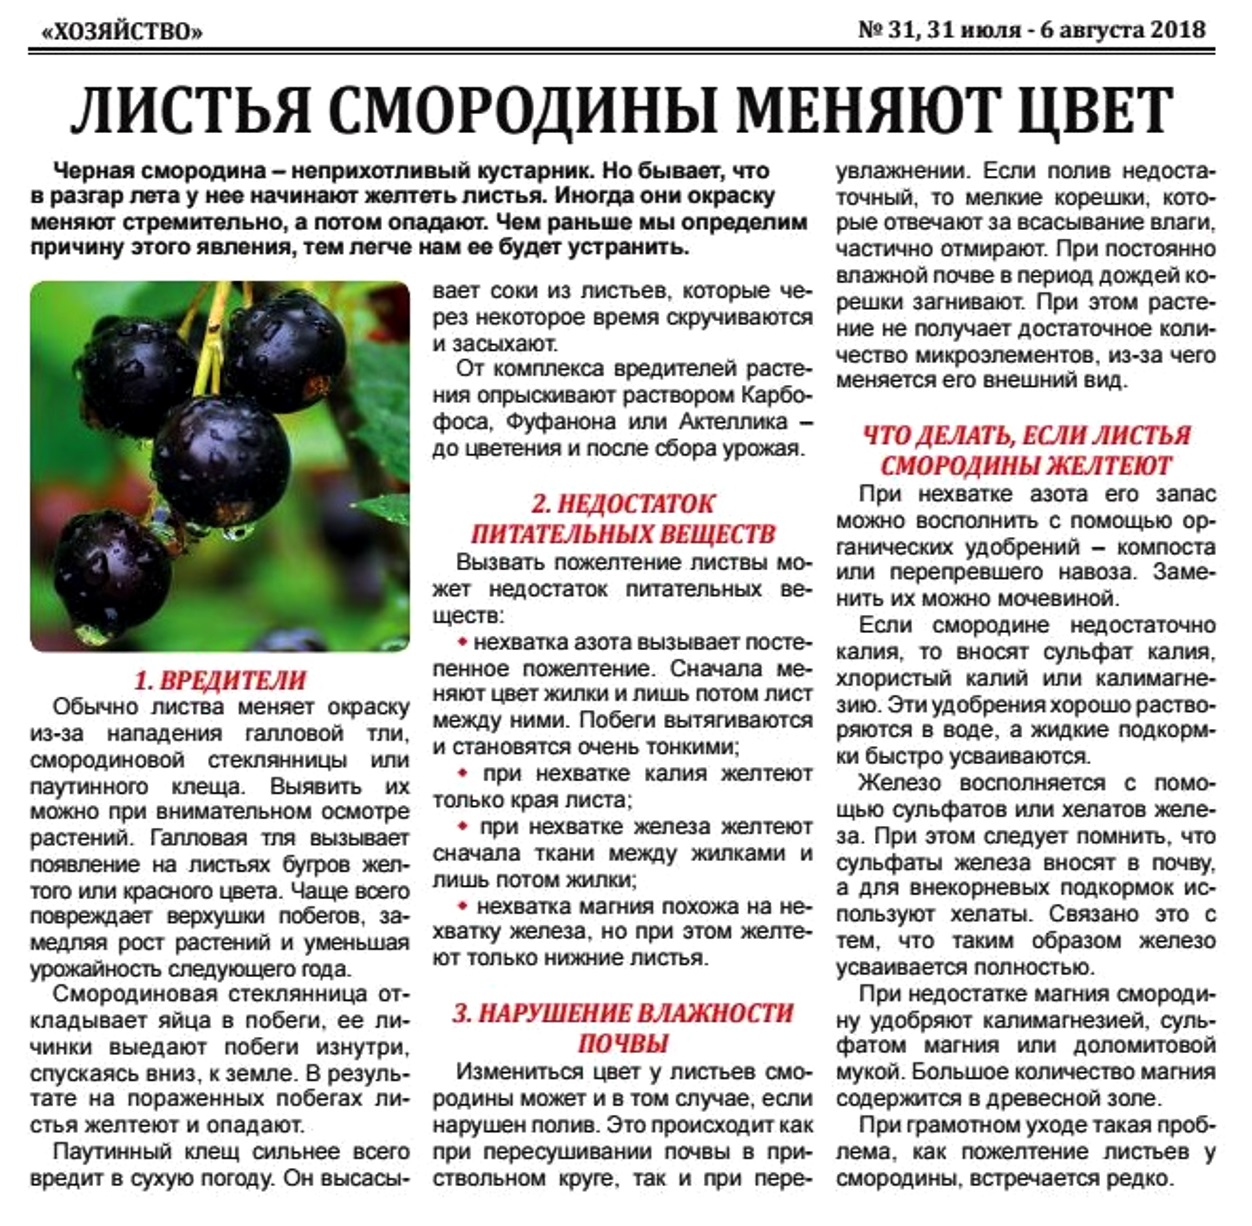 Почему пропадает чёрная смородина | fermer.ru - фермер.ру - главный фермерский портал - все о бизнесе в сельском хозяйстве. форум фермеров.